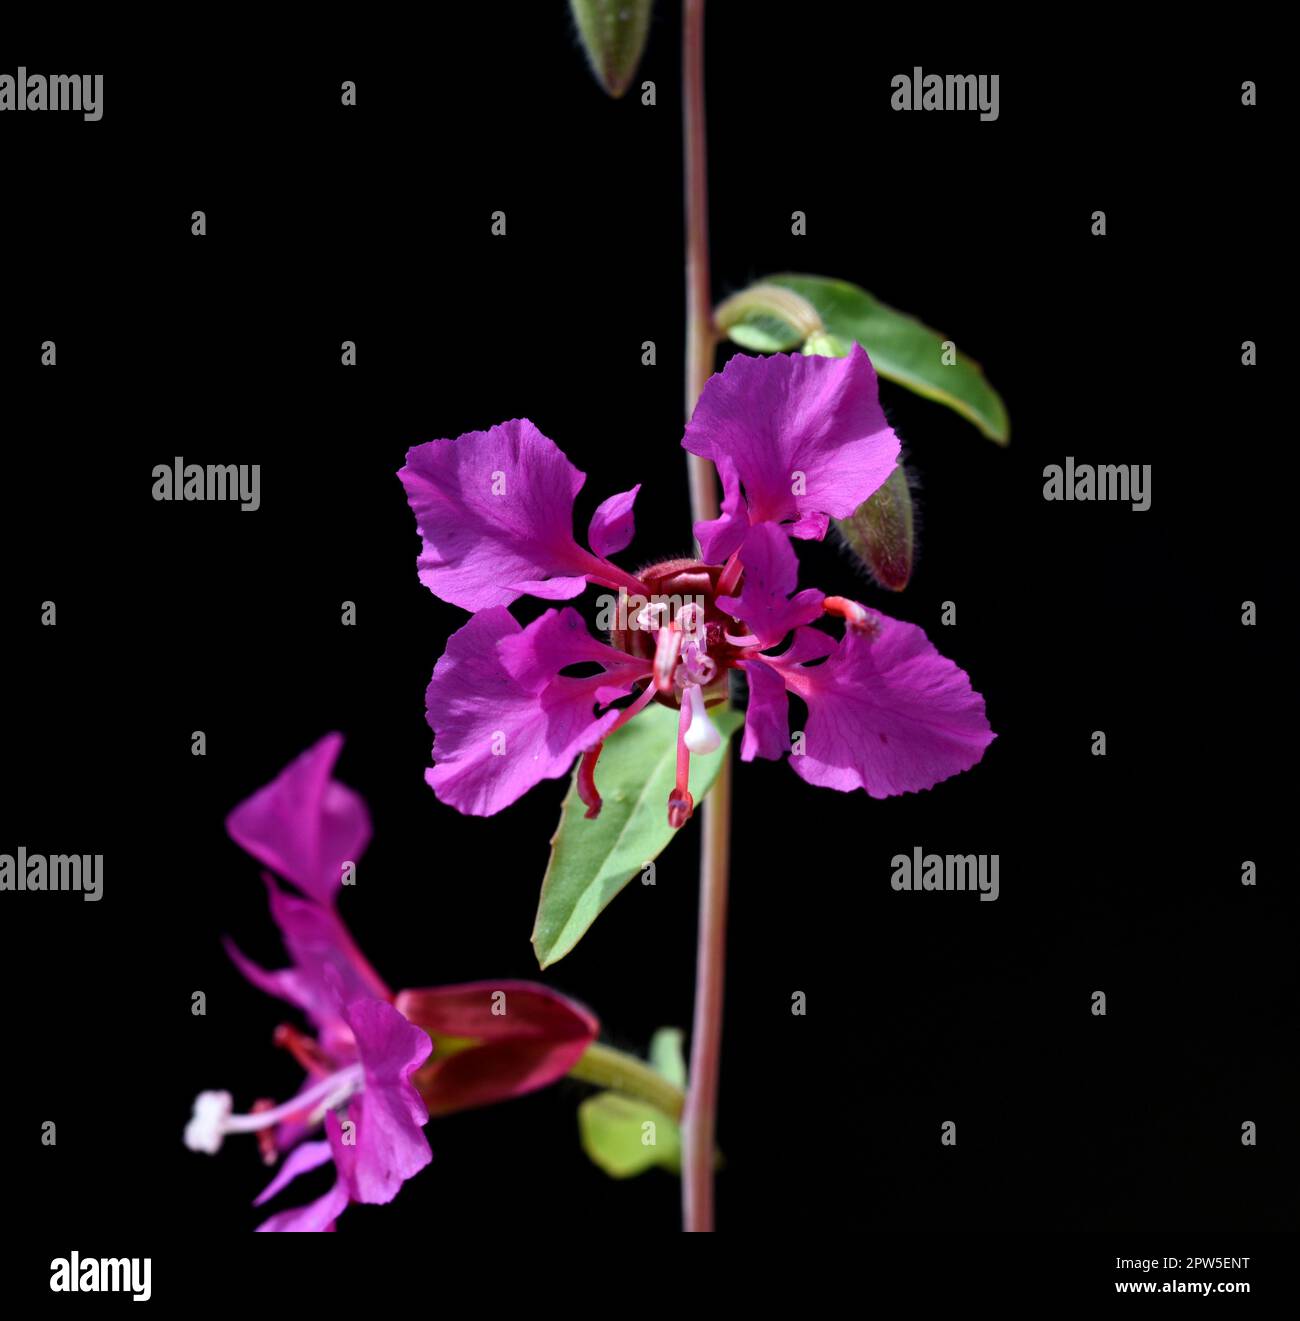 Klarkie, Clarkia pulchella ist eine huebsche Sommerblume mit lila Blueten. Klarkie, Clarkia pulchella is a pretty annual with purple flowers. Stock Photo